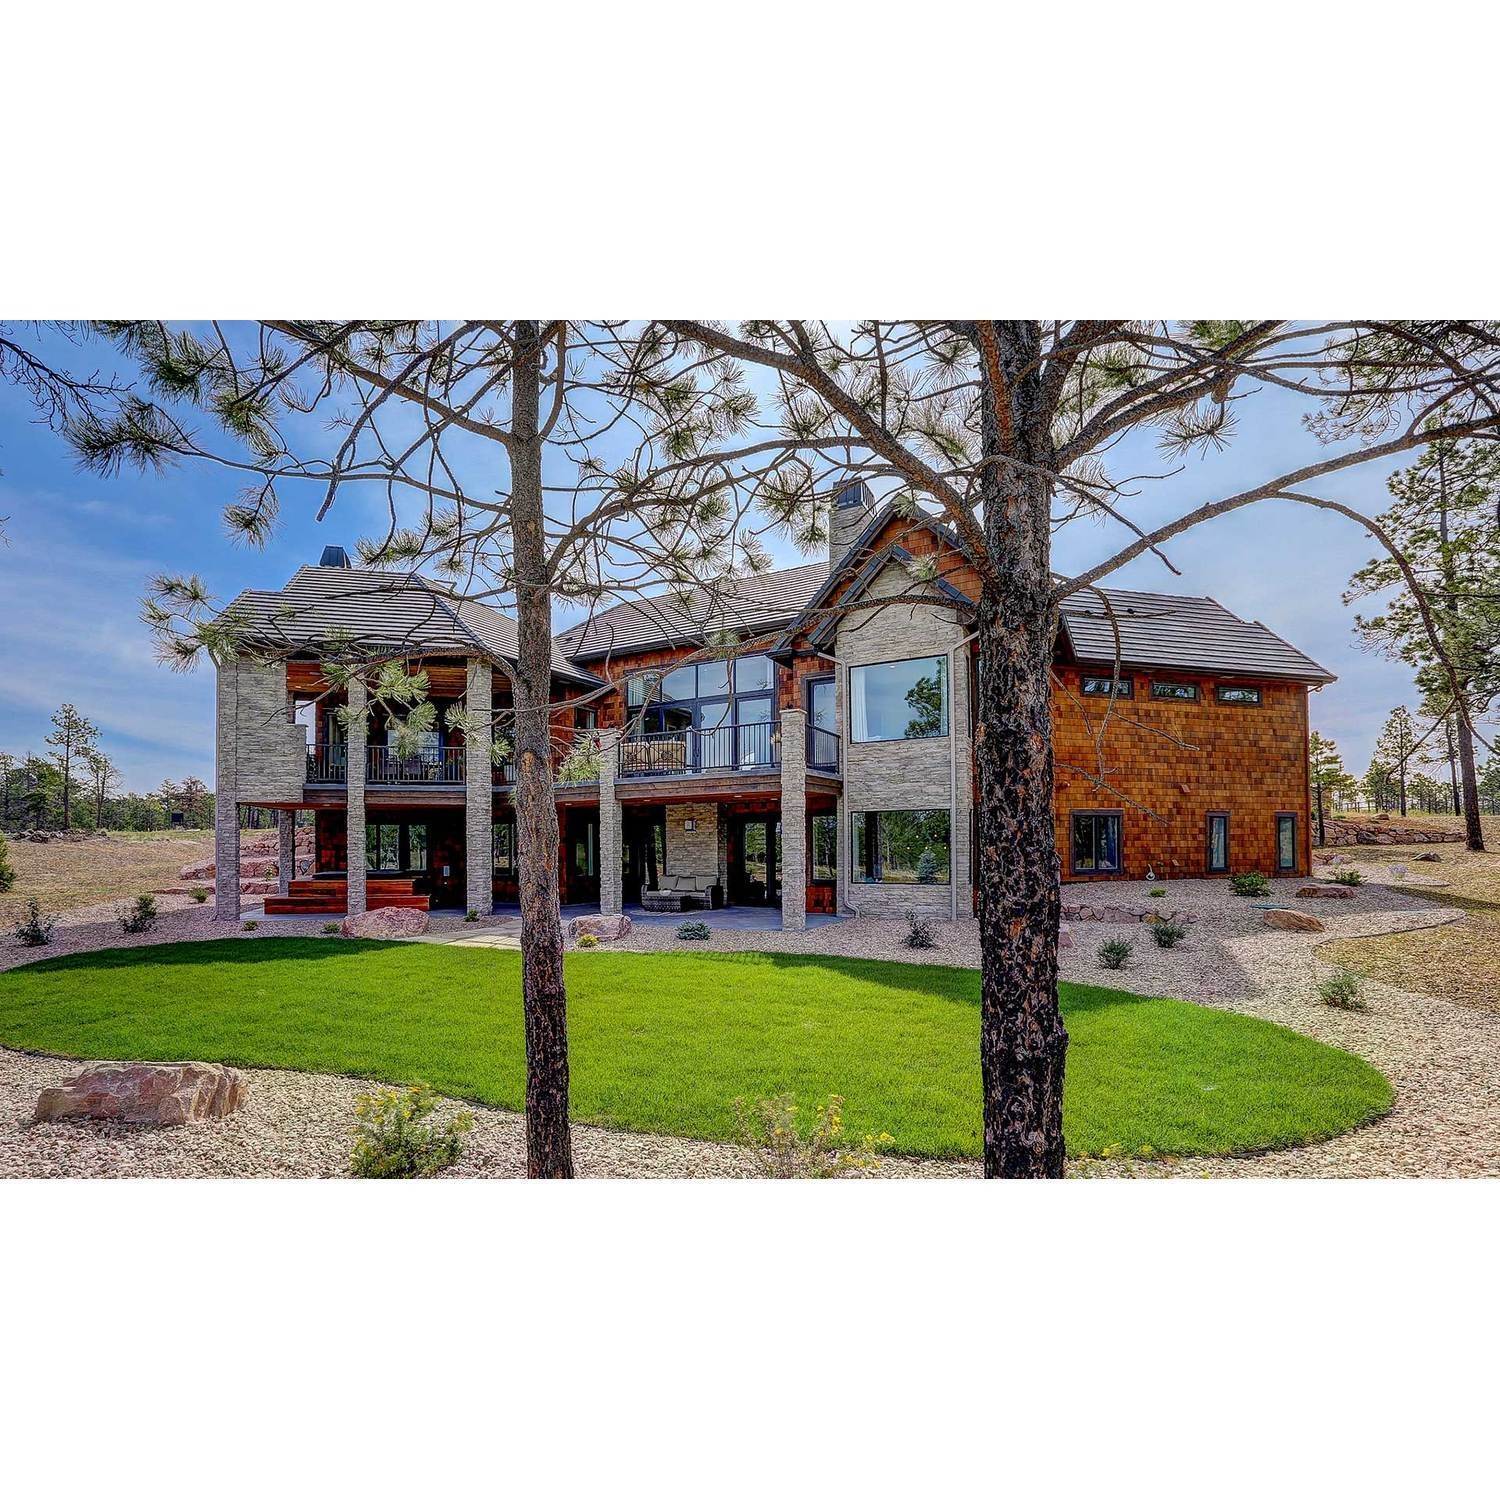 37. Galiant Homes здание в 4783 Farmingdale Dr, Colorado Springs, CO 80918